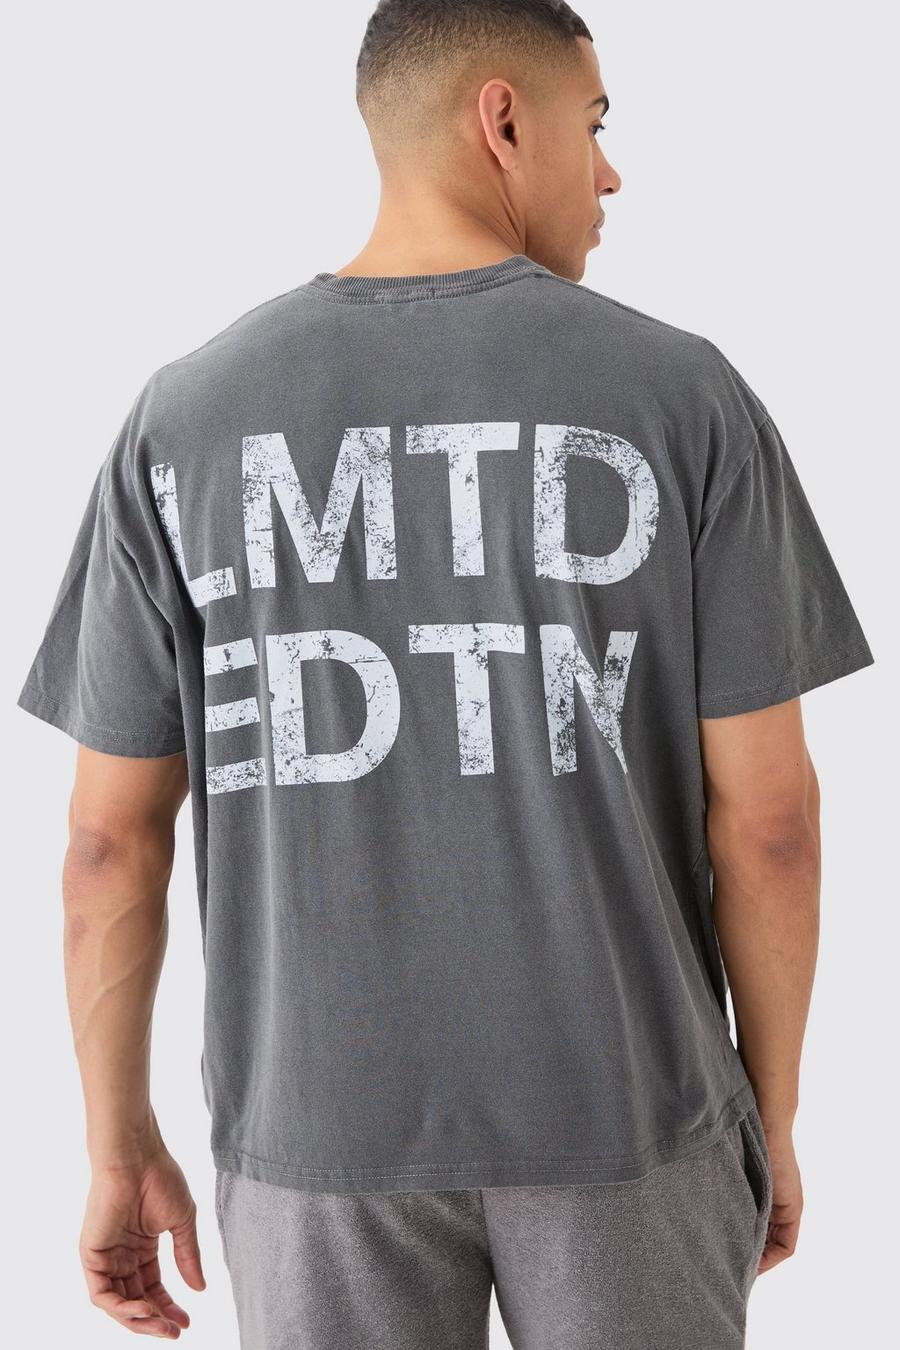 Charcoal Lmtd Oversize Urblekt t-shirt image number 1